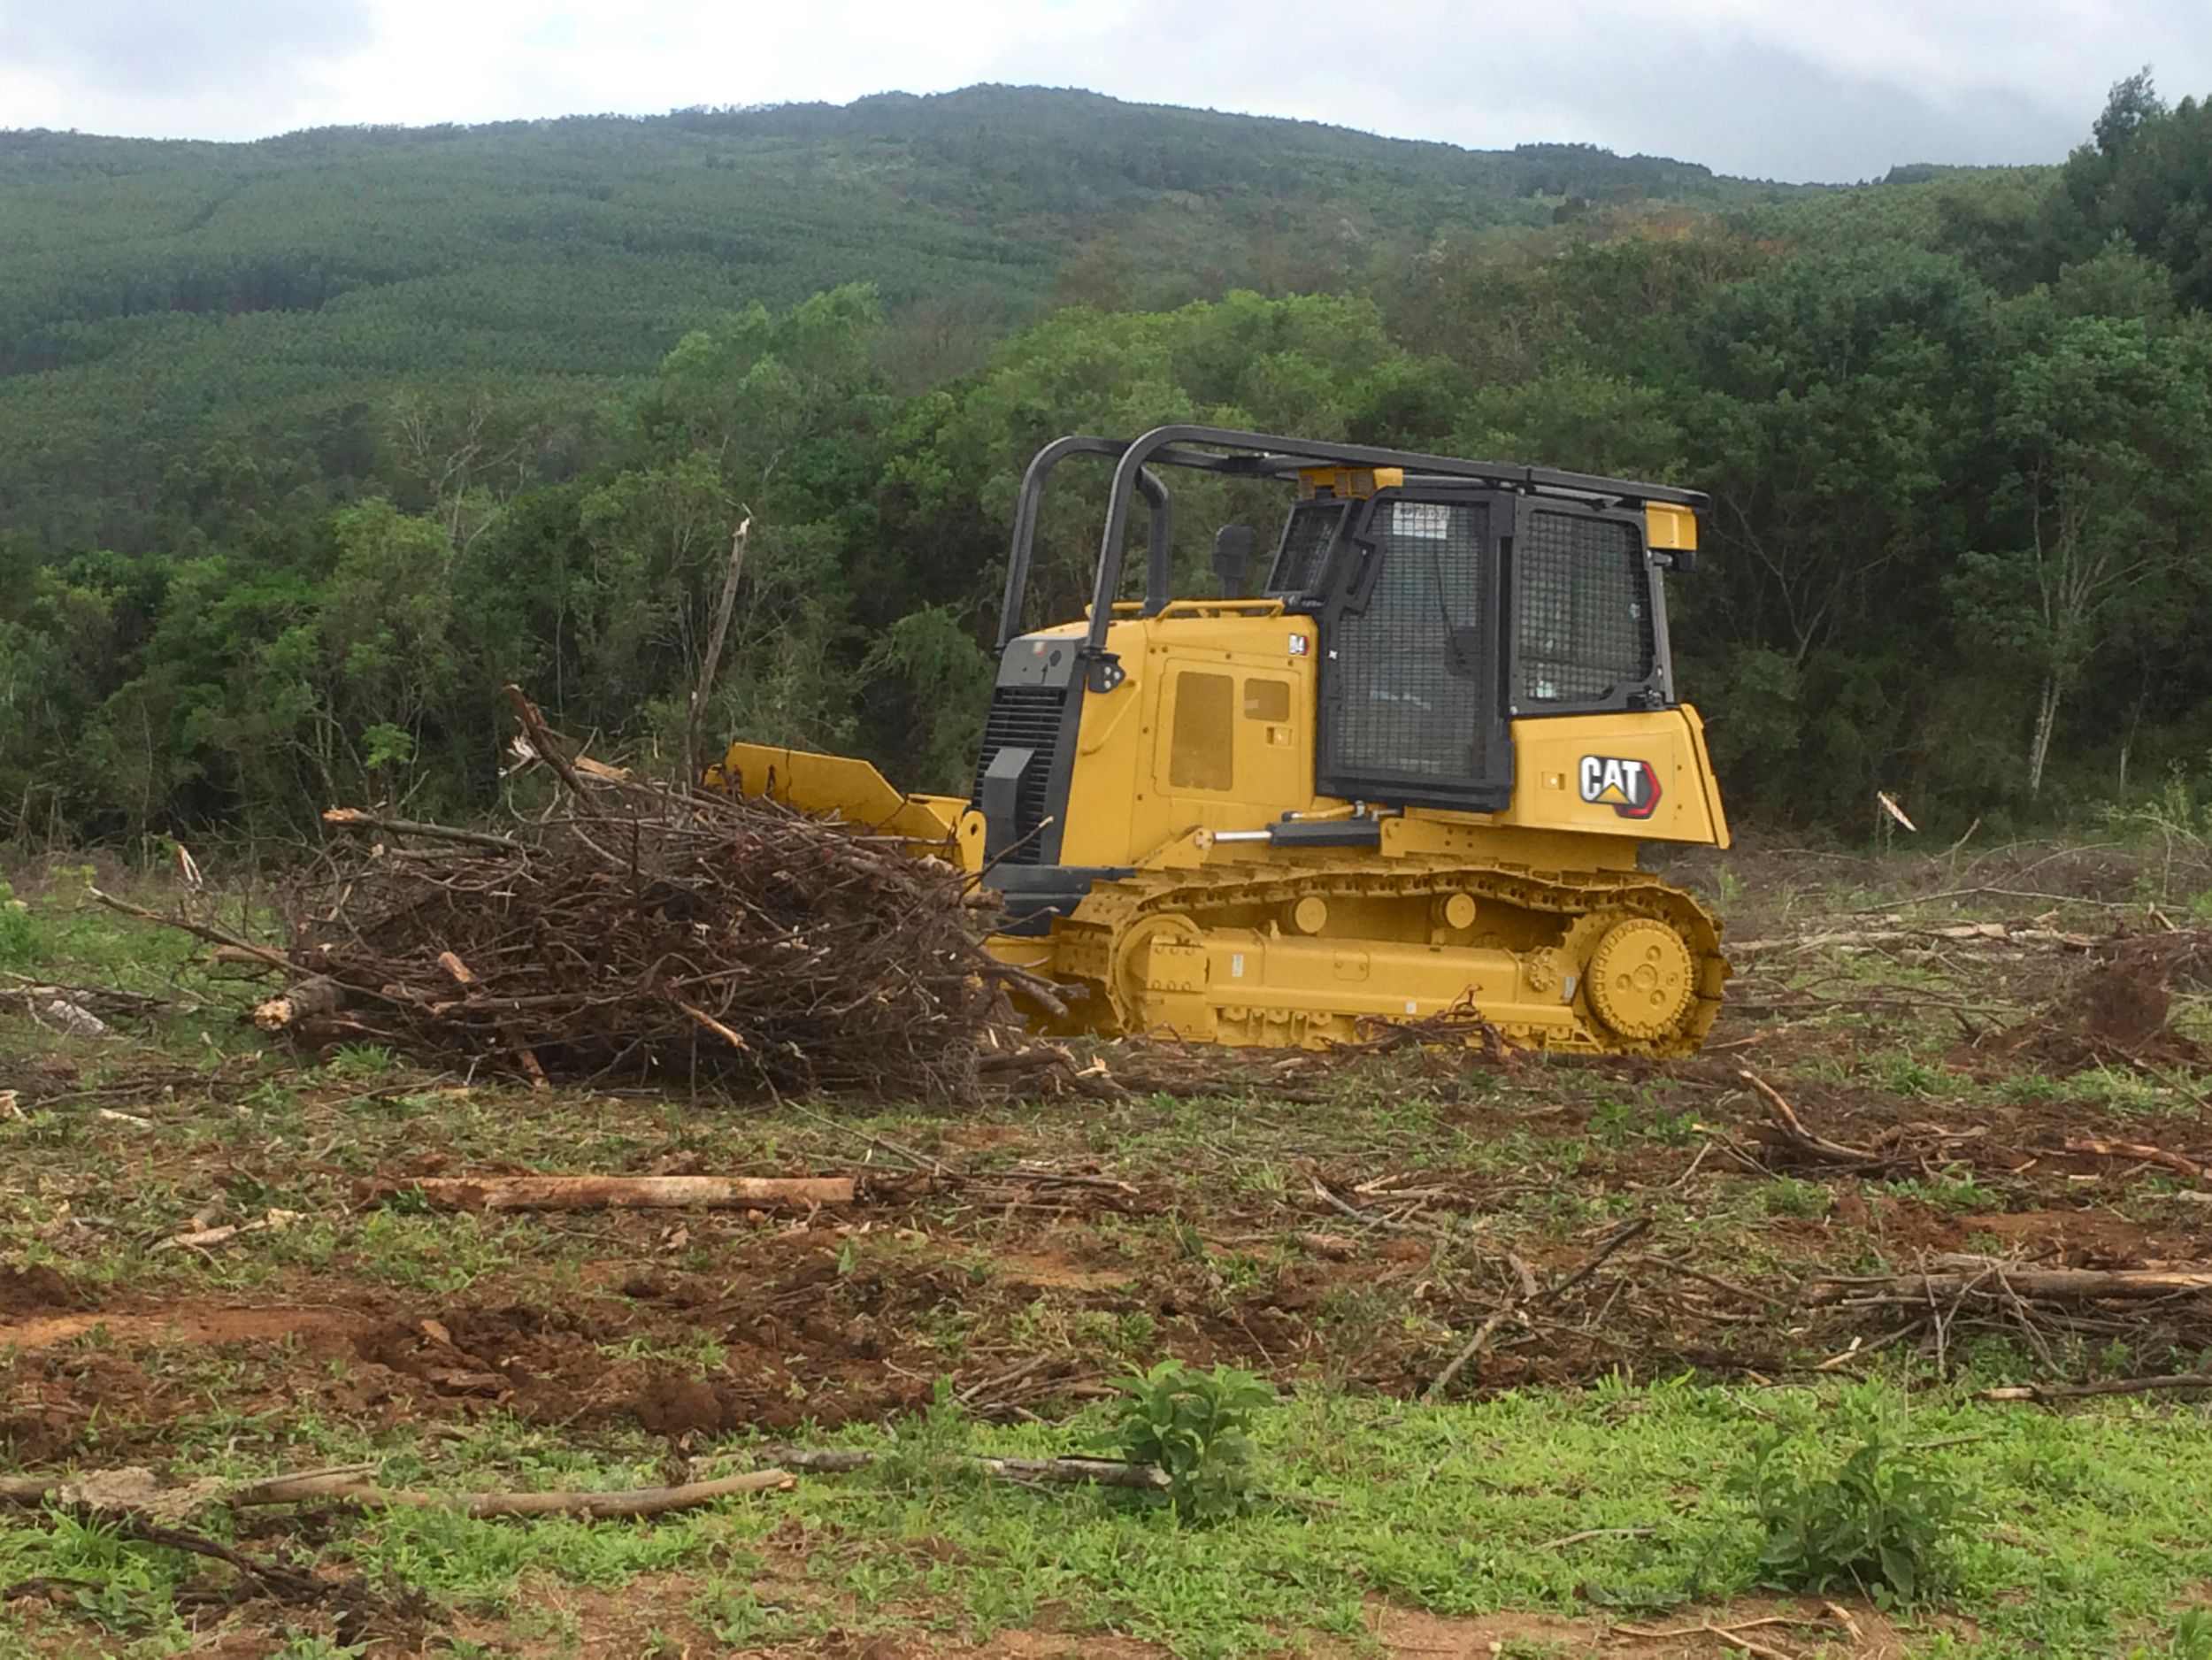 جرار D4 المزود بالكاسحات والحواجز يقوم بأعمال الغابات وتنظيف الأراضي